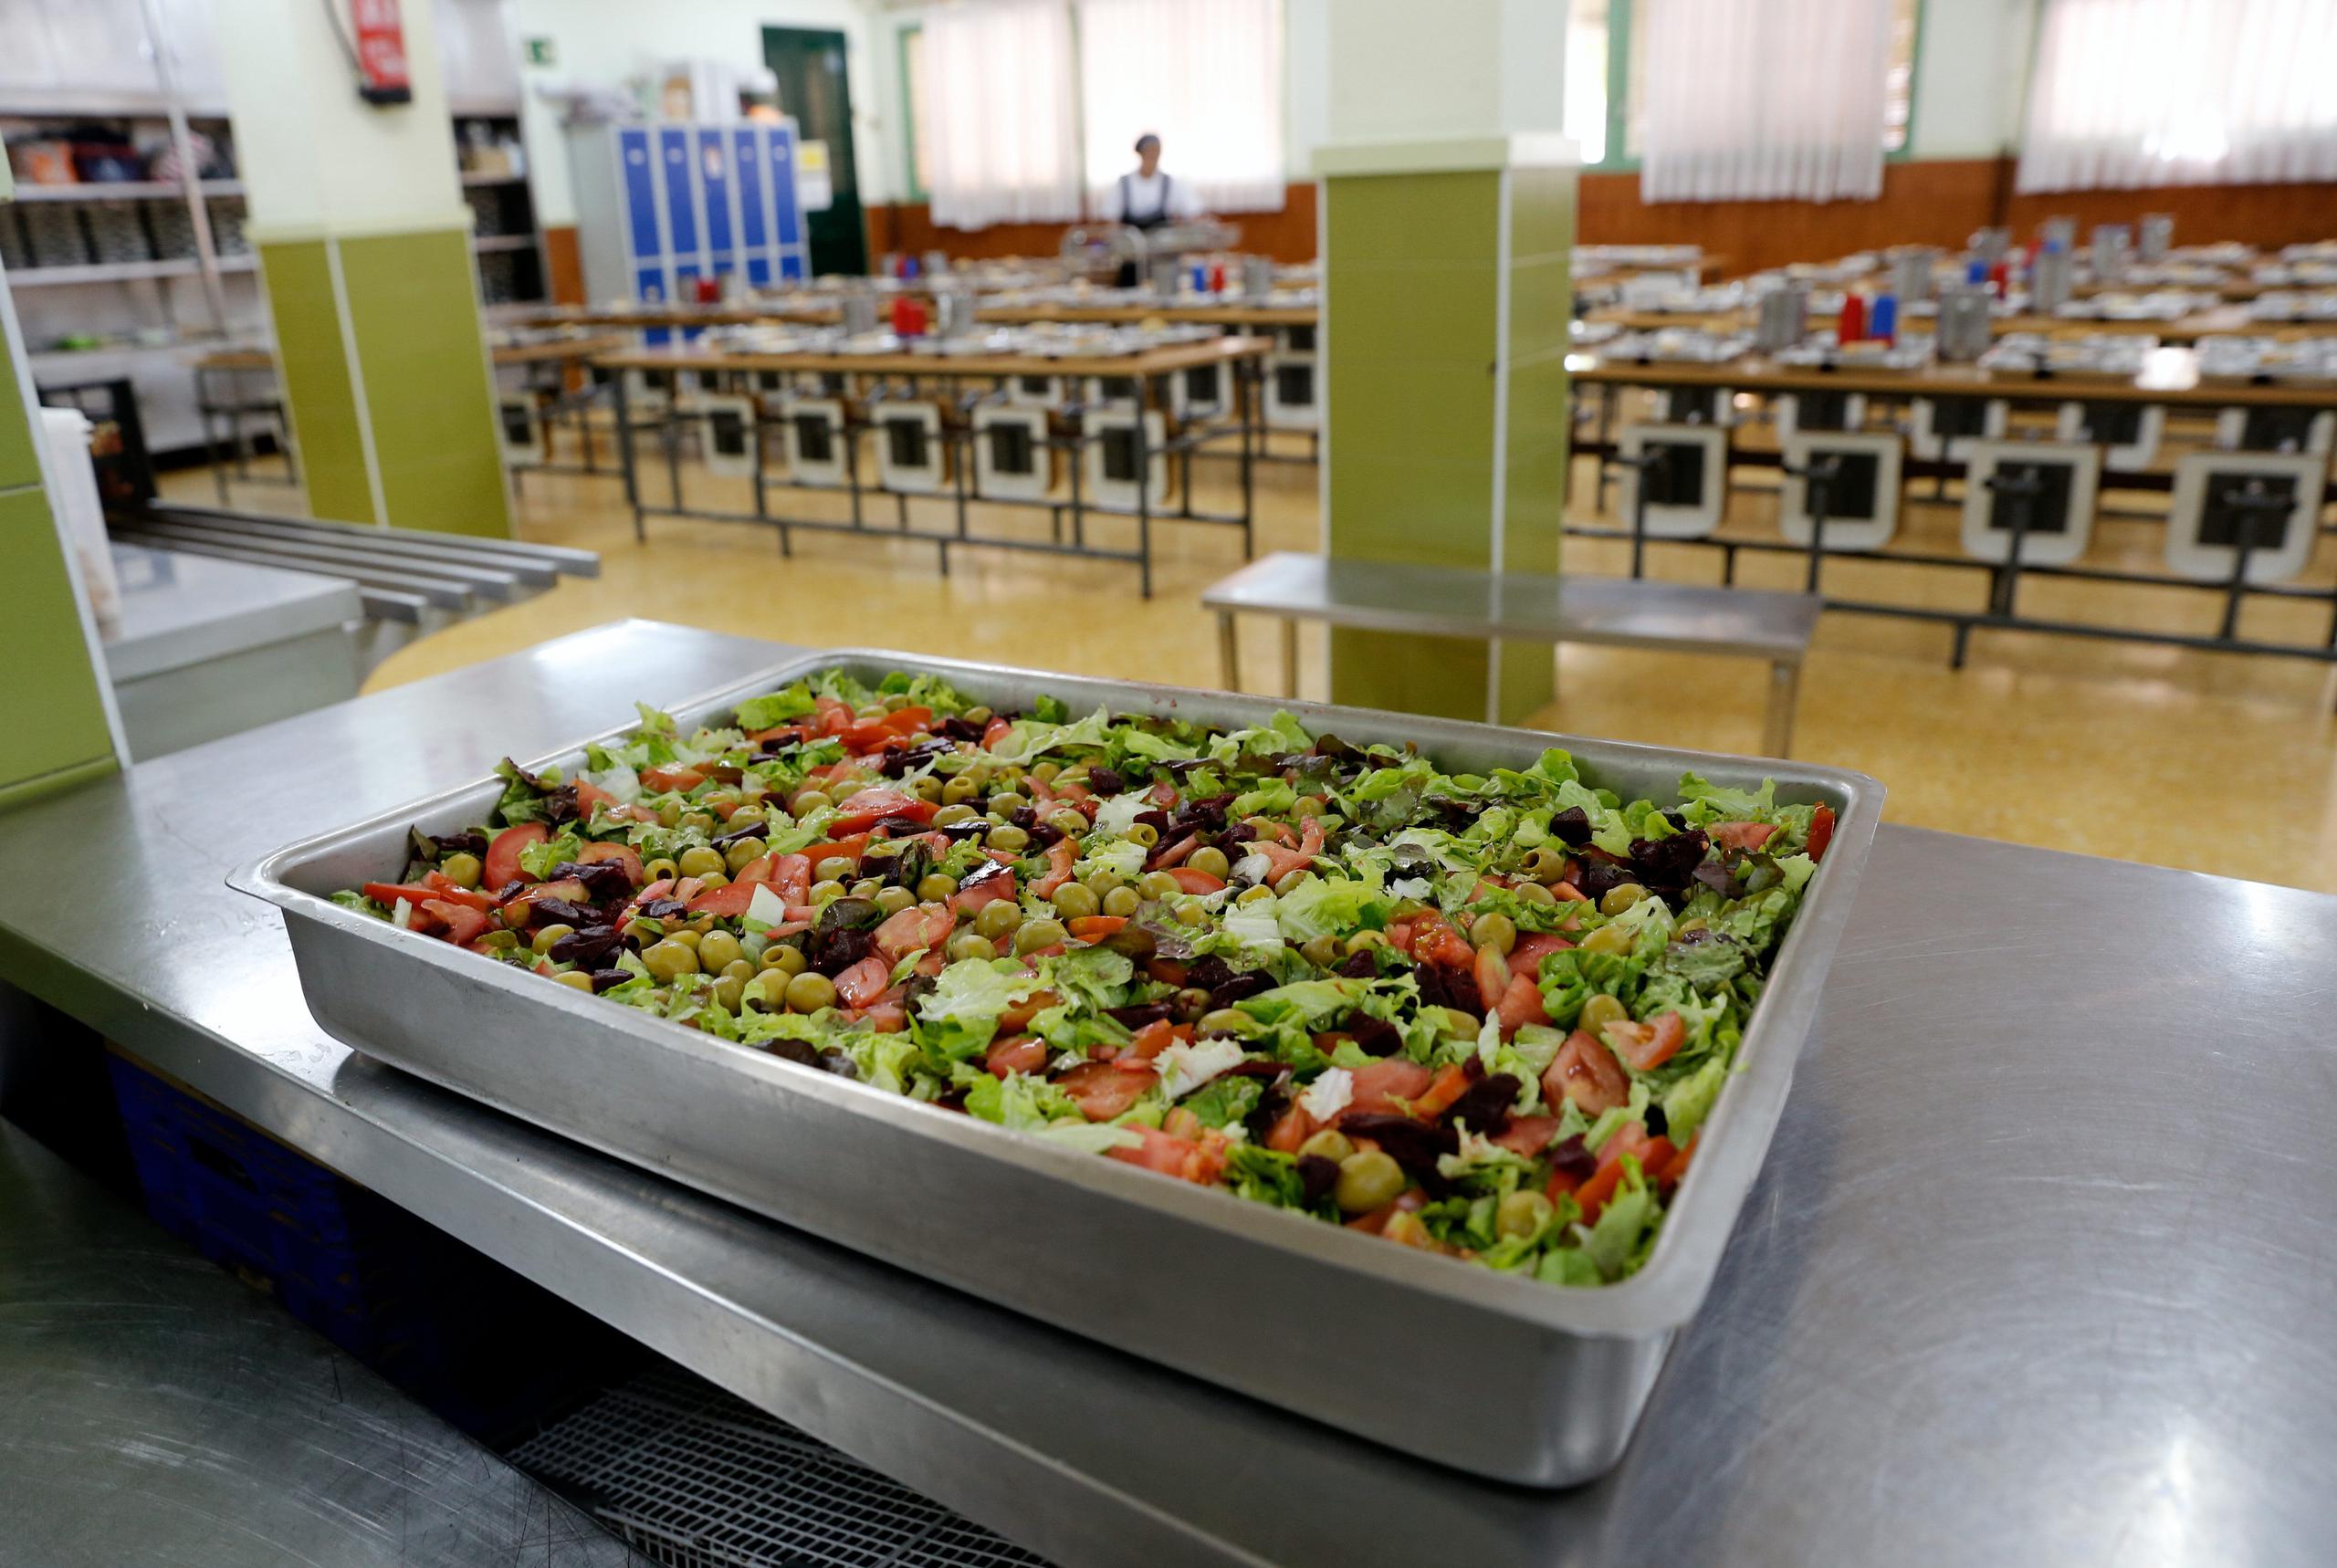 La cancelación de clases en alrededor de un centenar de países supone que 300 millones no pueden alimentarse en comedores escolares.